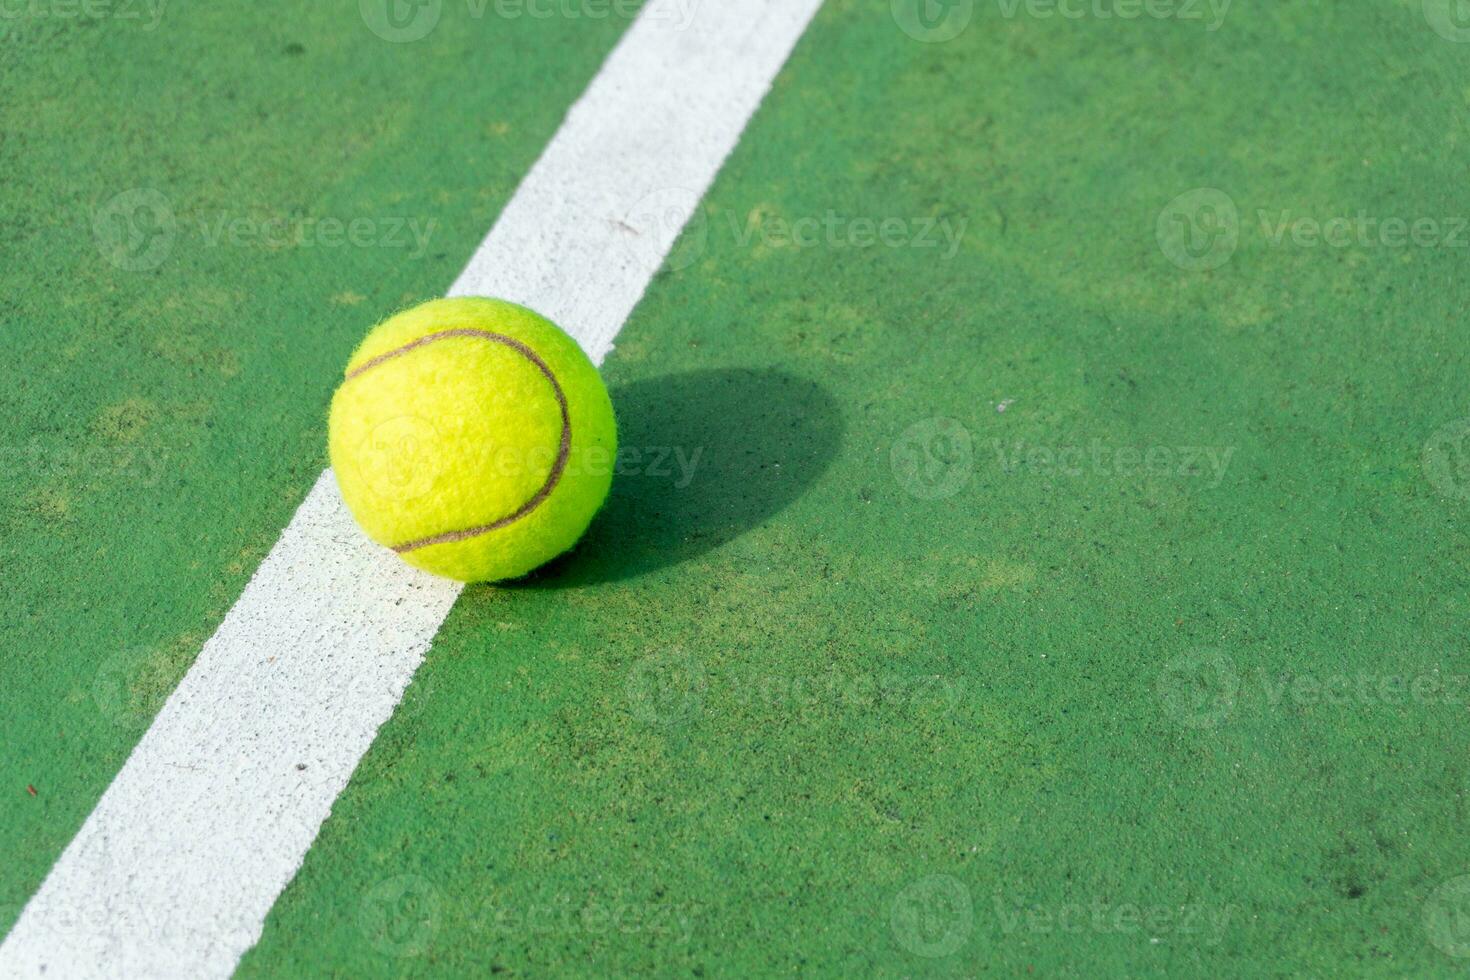 Gelb Tennis Ball auf Grün Gericht und Weiß Linien. oben Winkel Aussicht von Tennis Ball auf Gericht. foto